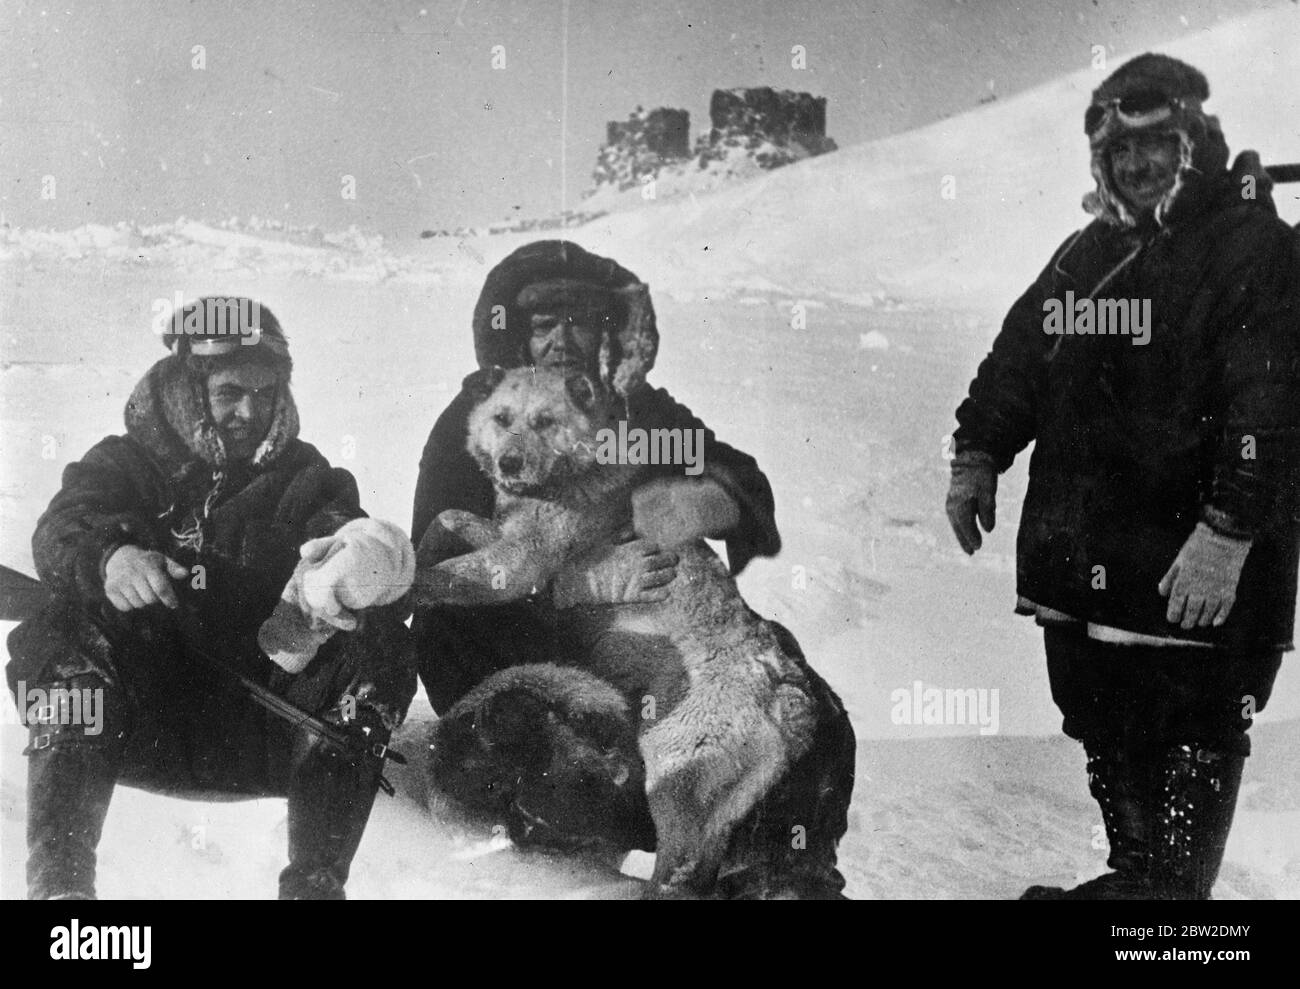 La glace polaire se fissure et se casse sous les pieds des scientifiques russes. Les quatre scientifiques soviétiques campés sur un déferlement de glace au pôle Nord attendent la mort enferée par les ténèbres de l'hiver arctique. Le parti comprend M Ivan Papanin, le chef, Eugene Federiv, astronome, Peter Shirshov, biologiste marin, Ernst Krenkal, opérateur sans fil, et Jolly et Eskimo chien. Les scientifiques ont envoyé un message radio au monde entier indiquant que leur flux de glace se craque sous la pression des champs de glace environnants. Le flux peut être maintenu pendant des jours ou seulement pendant des heures. Si des signaux radio sont émis, le monde charge le Banque D'Images